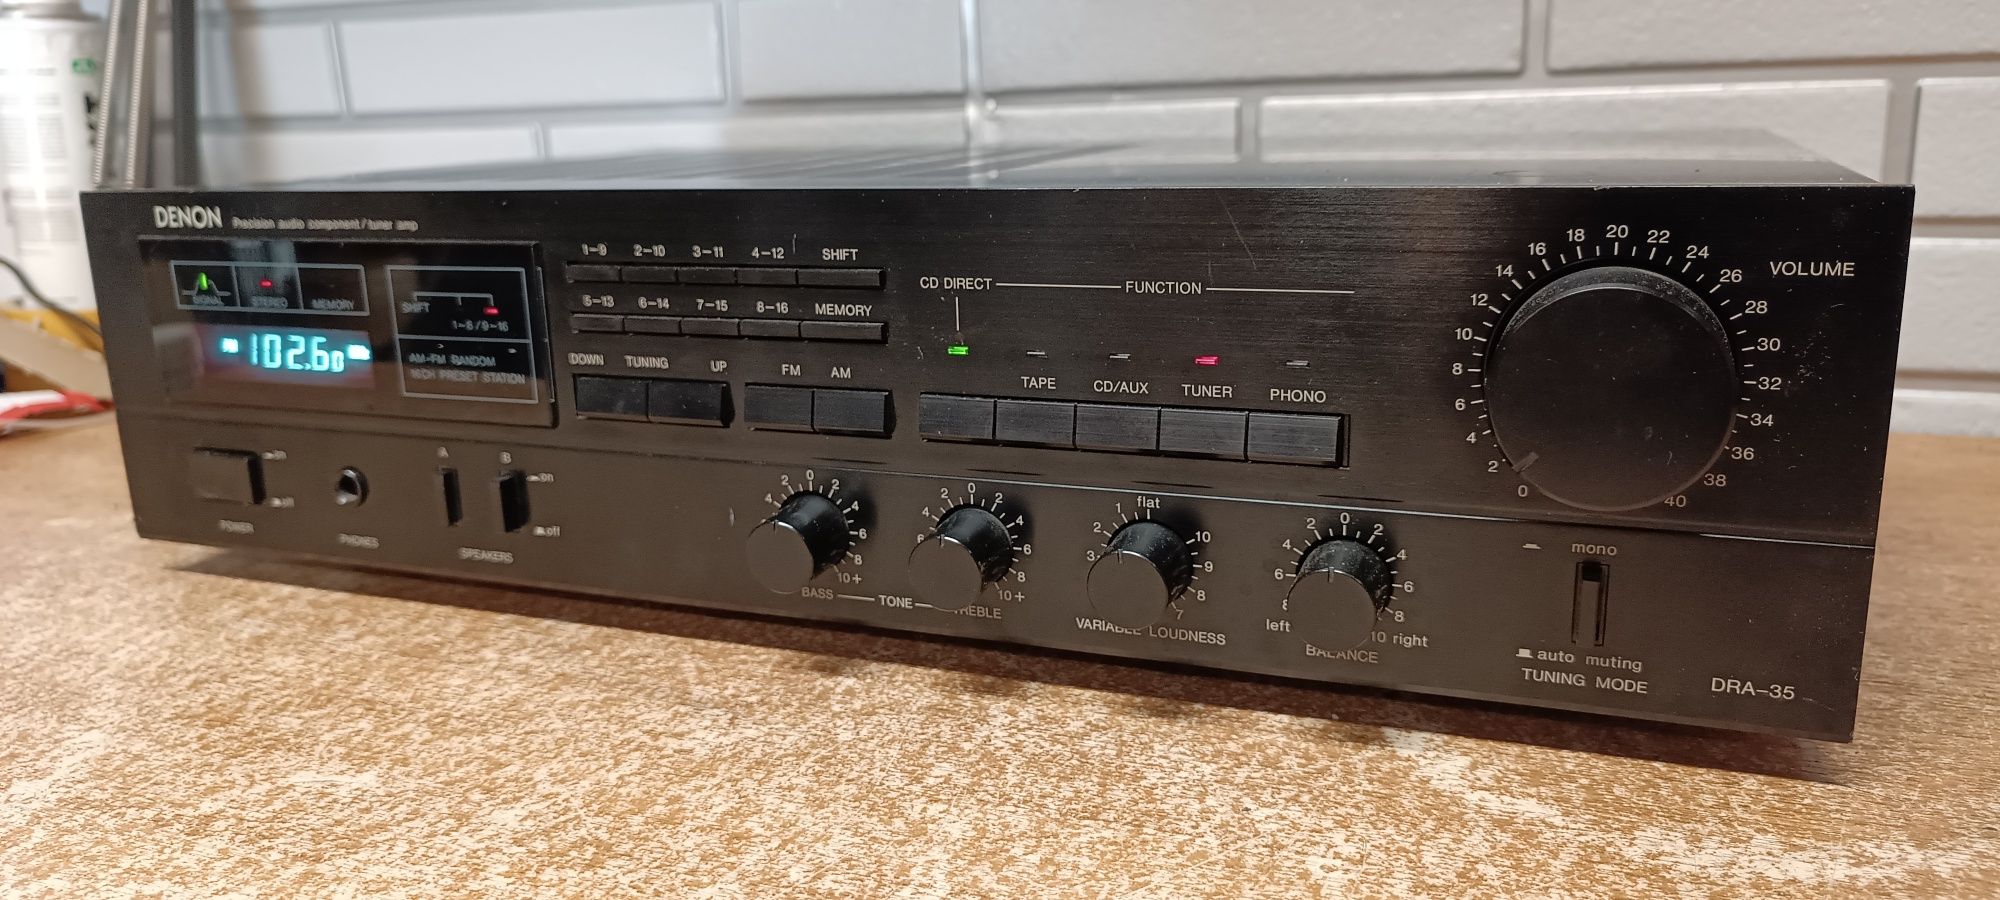 Amplituner stereo DENON DRA-35. Japan